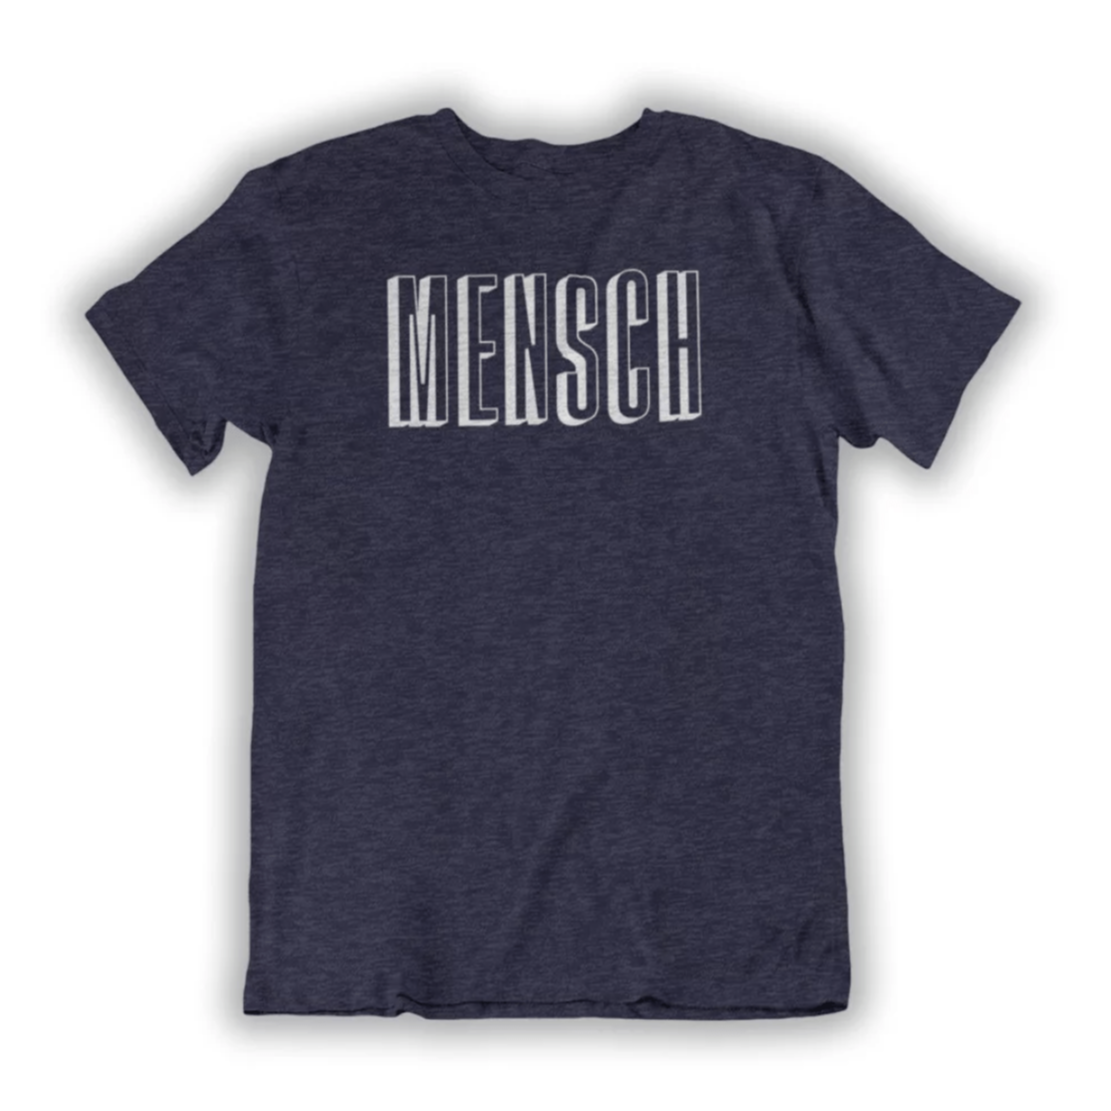 Piece of History T-Shirt Mensch Men's T-shirt - Navy